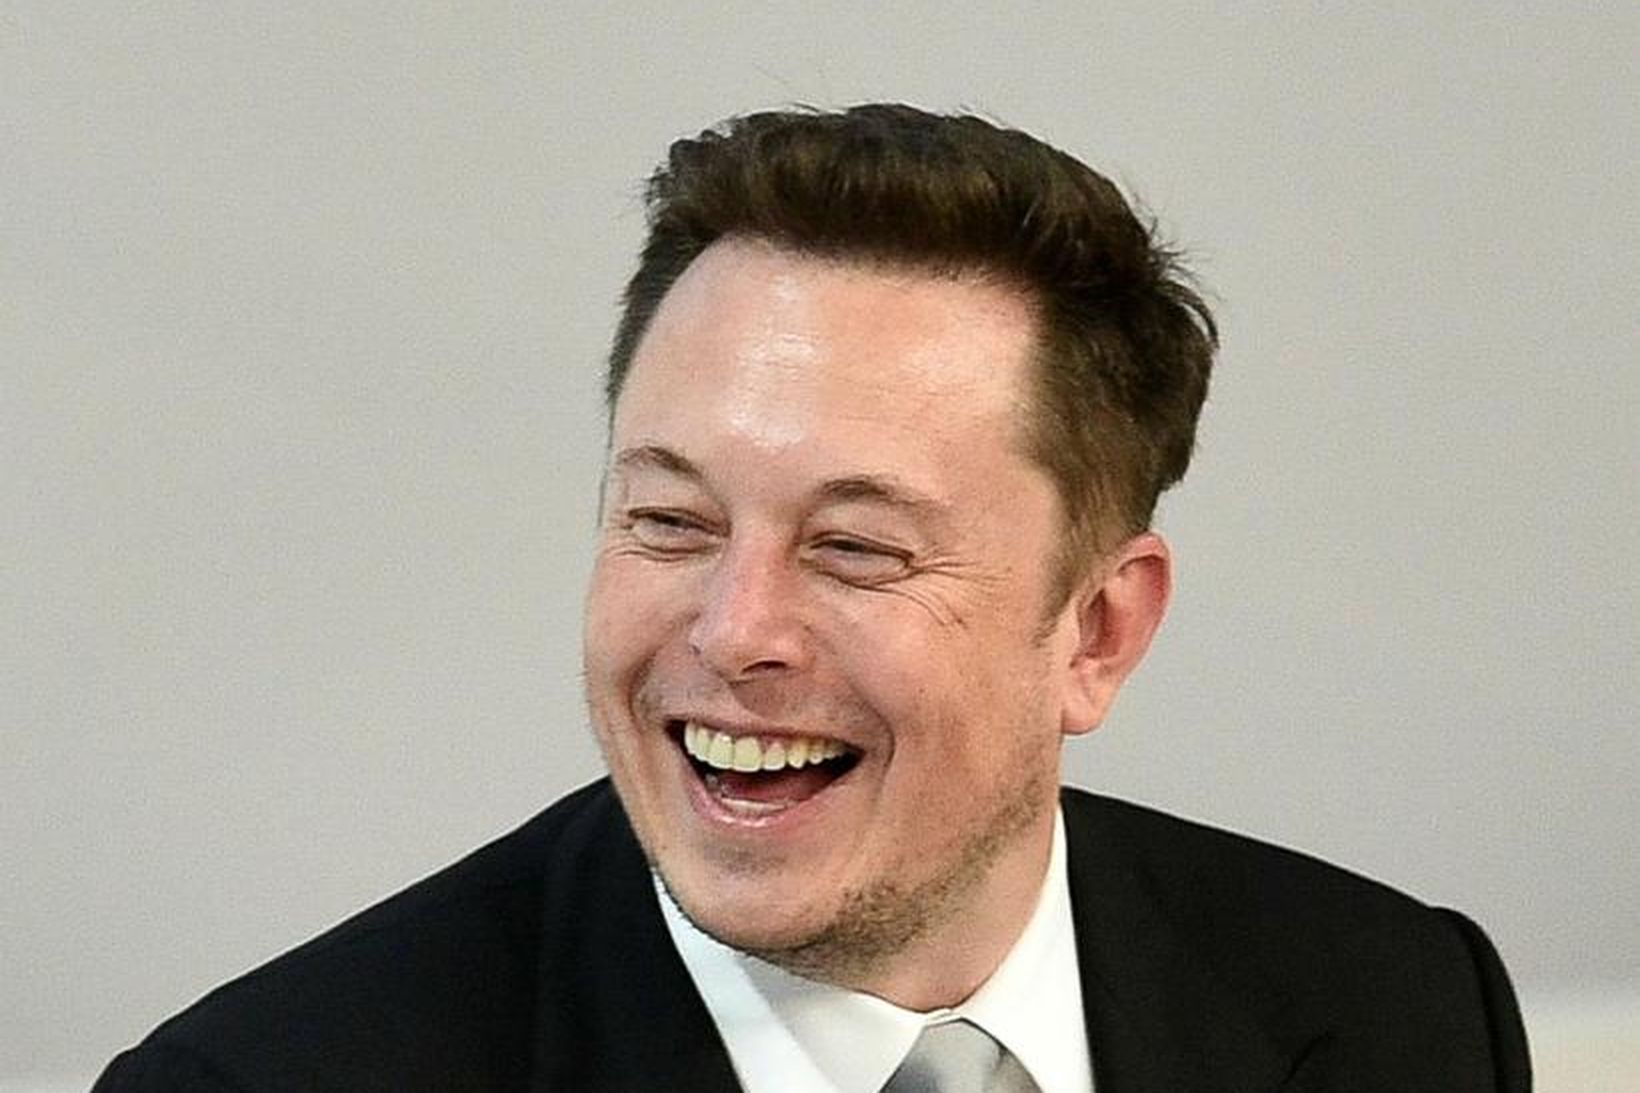 Elon Musk hefur gengið einstaklega vel enda mjög skipulagður.